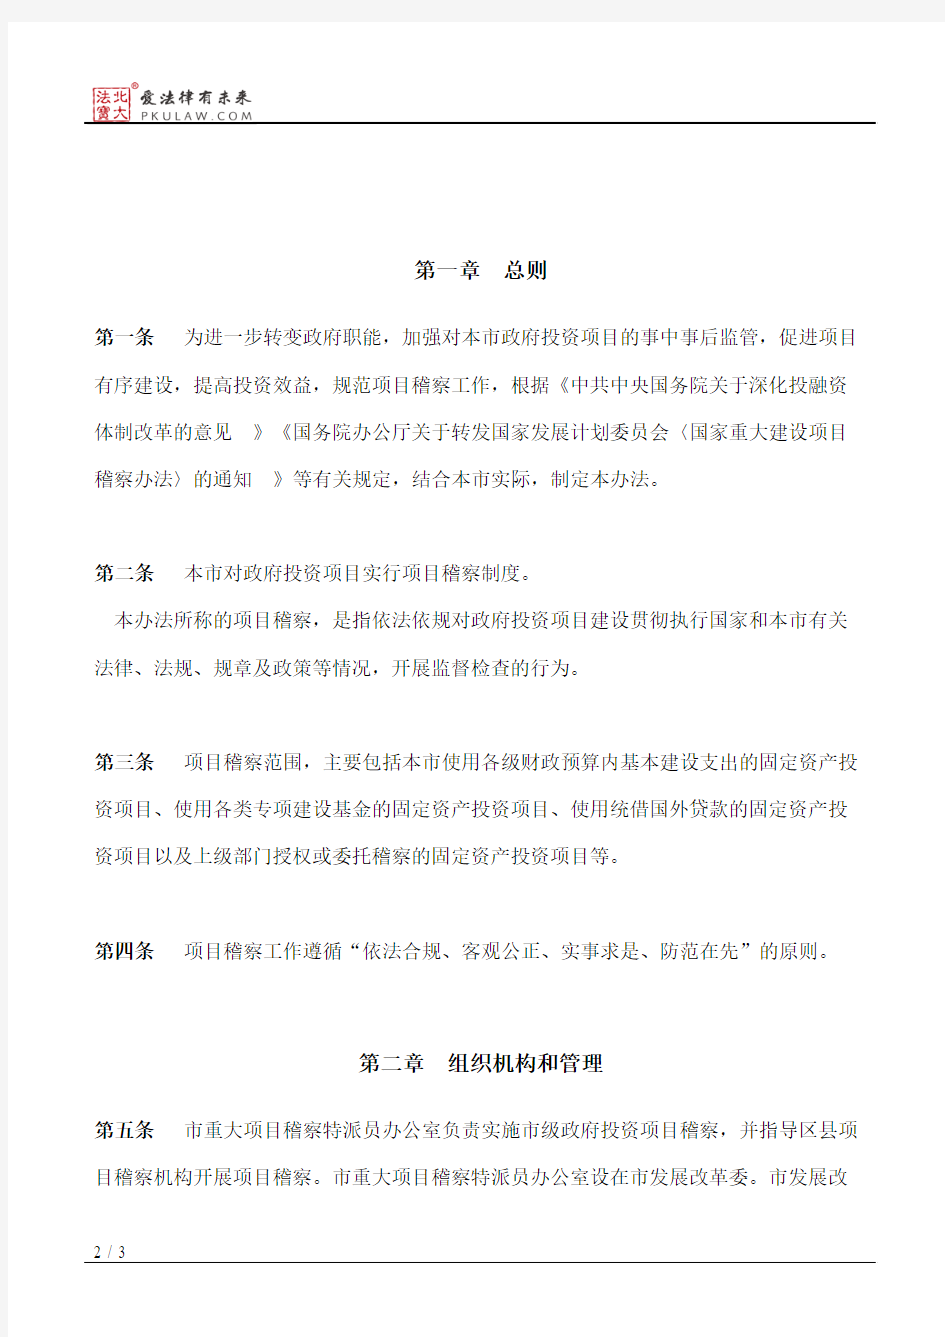 上海市人民政府关于批转市发展改革委制订的《上海市政府投资项目